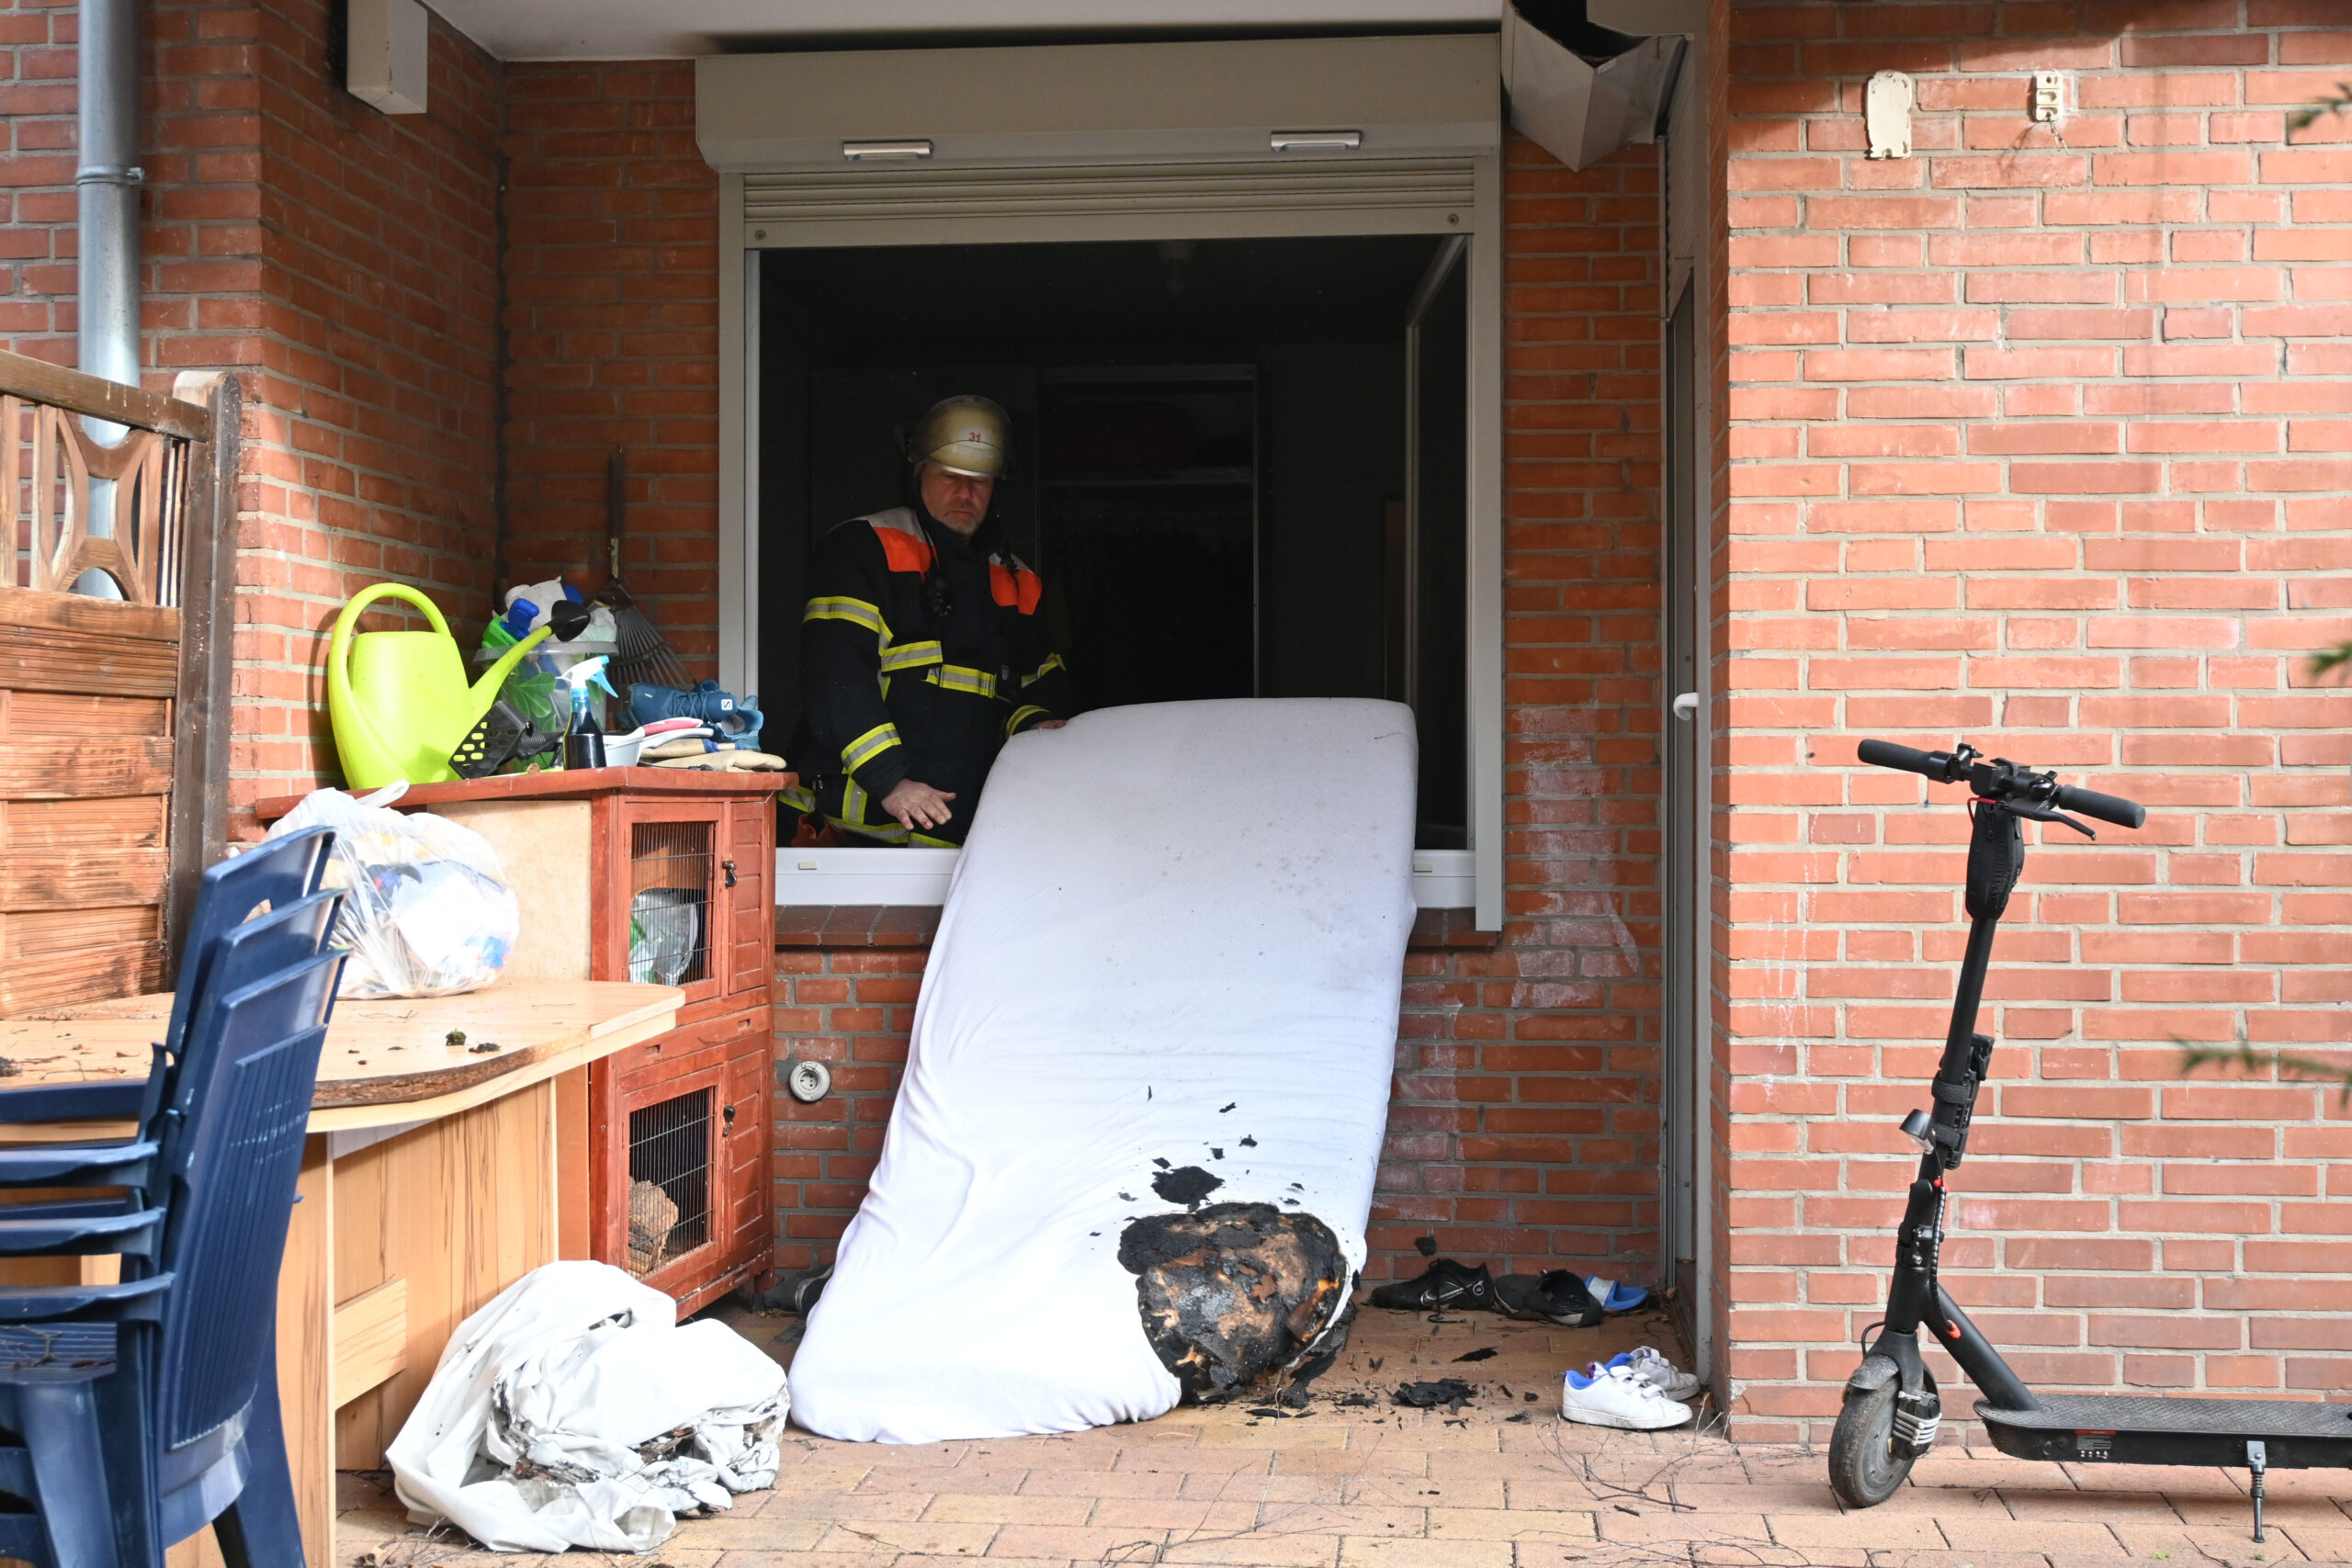 Brand in Wohnhaus in Hamburg – Feuerwehr löscht brennende Matratze